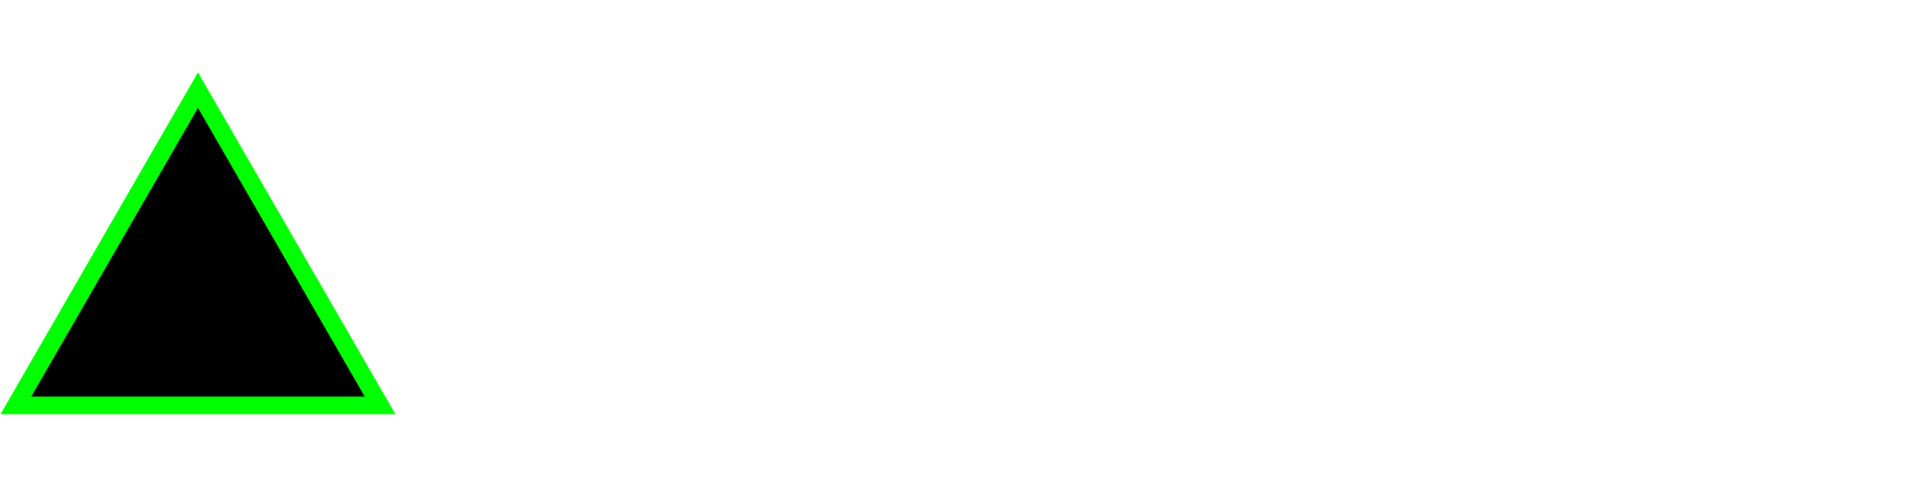 Monitoring Surveyor Link